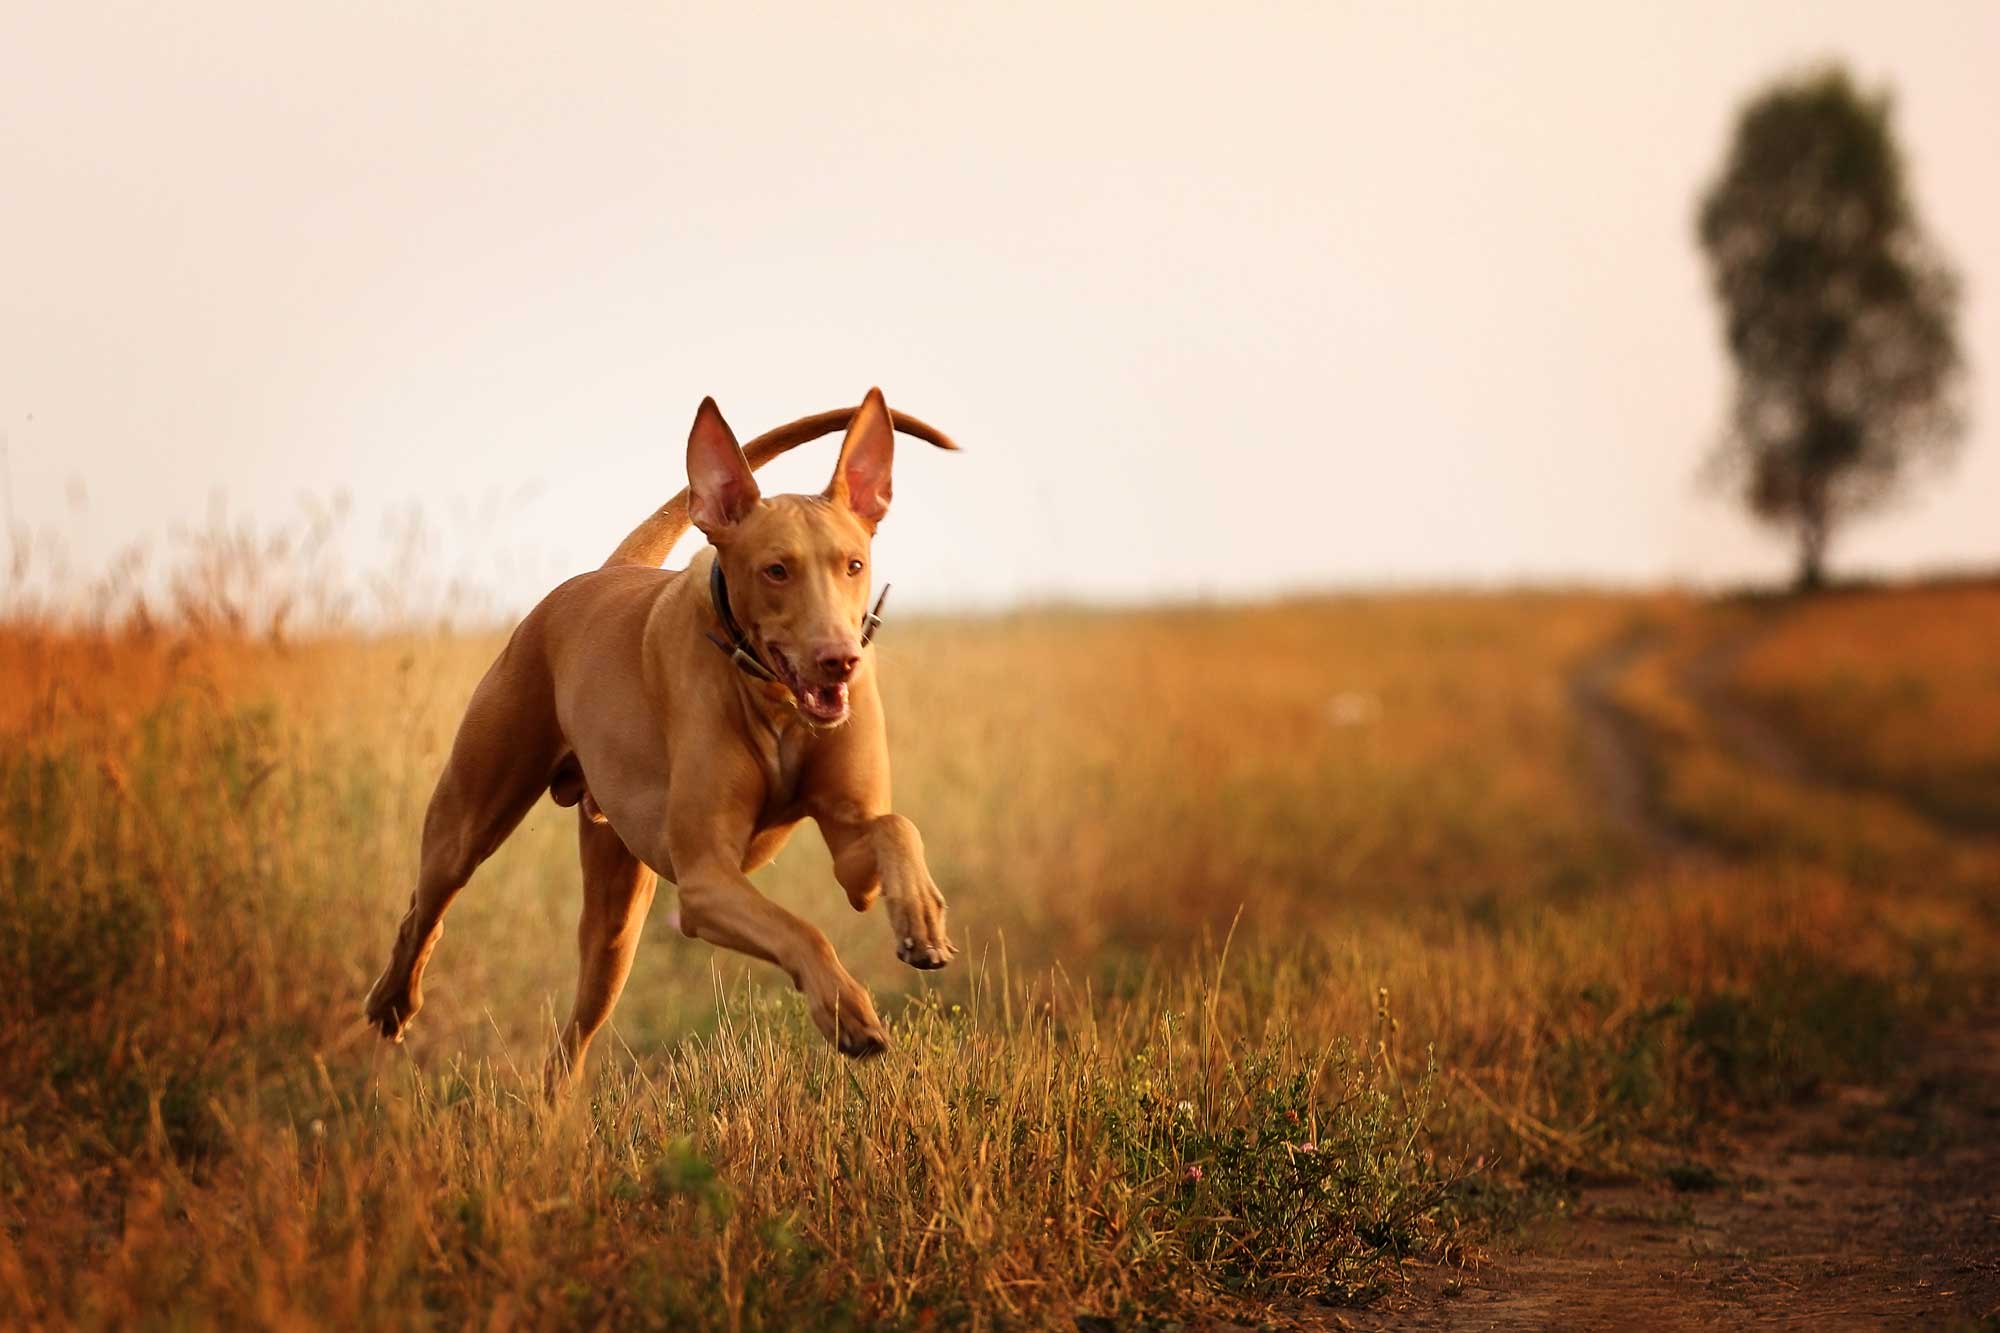 Brown lurcher dog running through grassy field at sunset